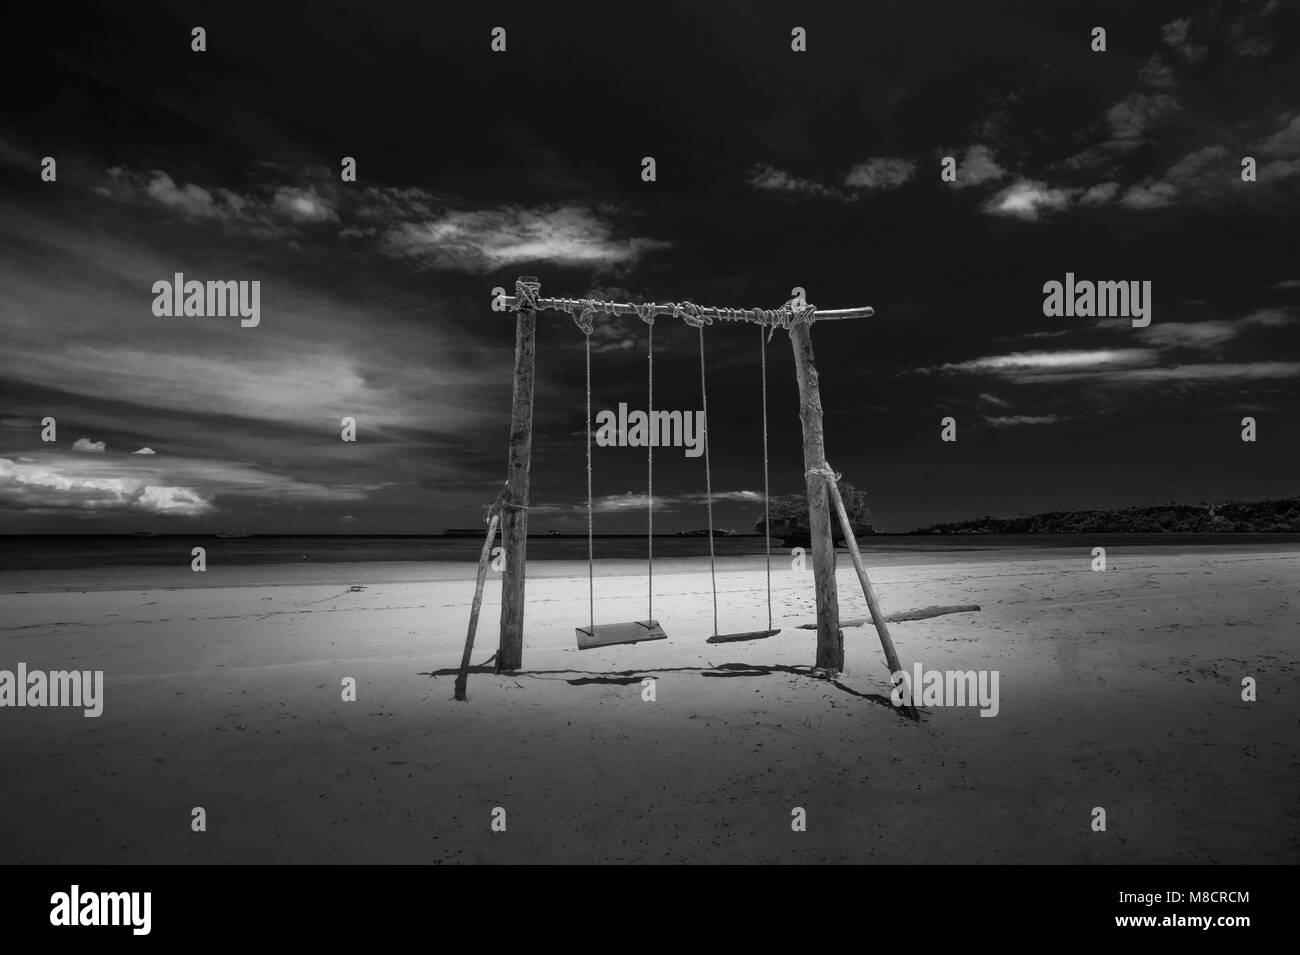 Fotografia di un swing in legno sulla spiaggia in bianco e nero Foto Stock